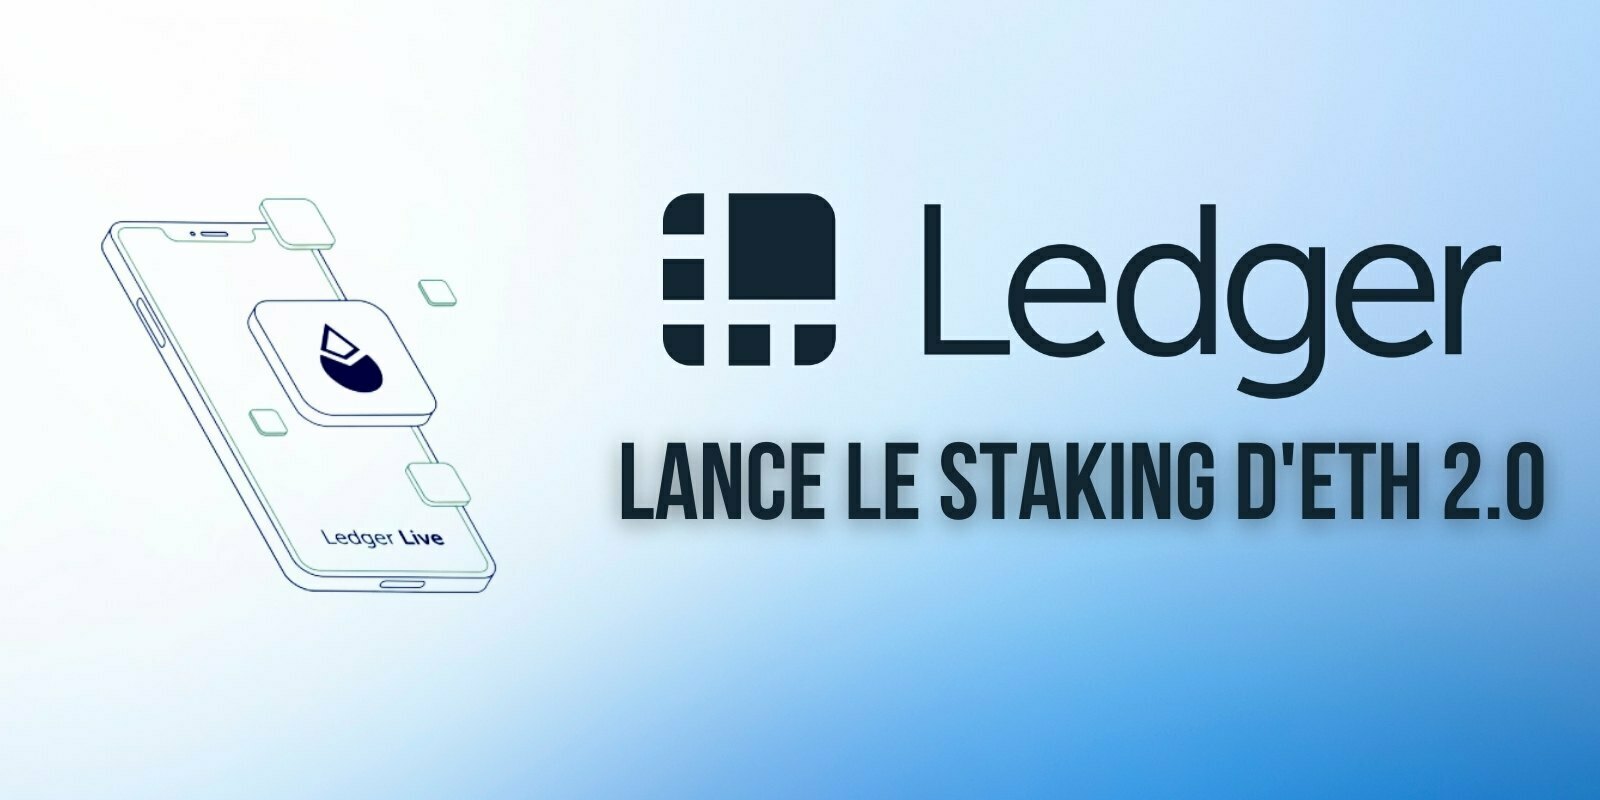 Ledger intègre une option de staking d'Ether (ETH) en collaboration avec Lido